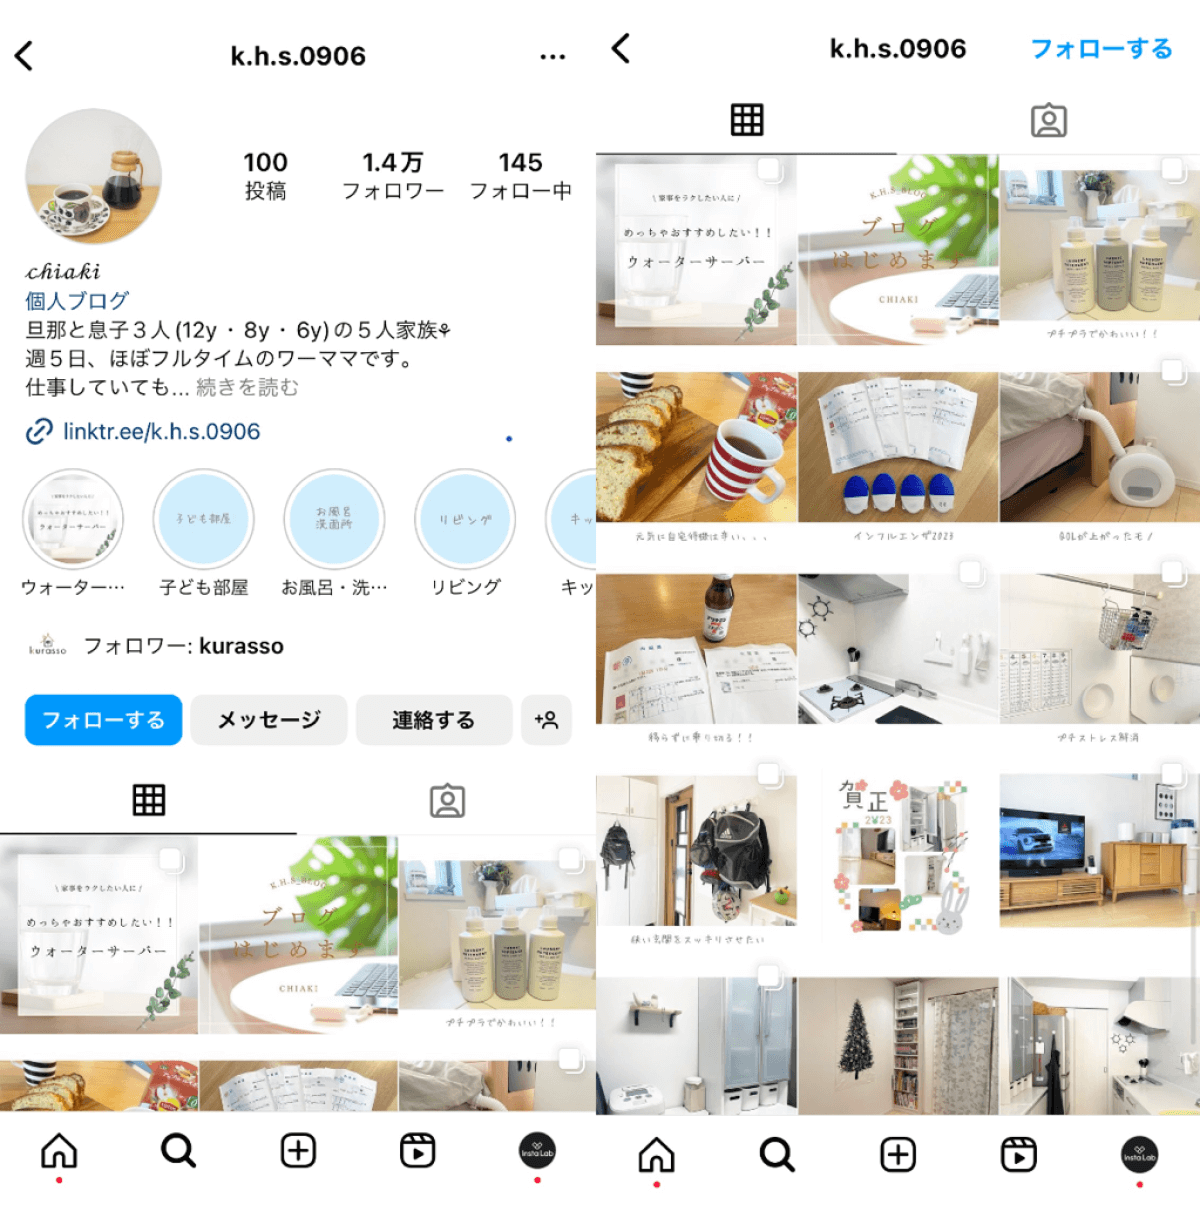 instagram-account-k-h-s-0906